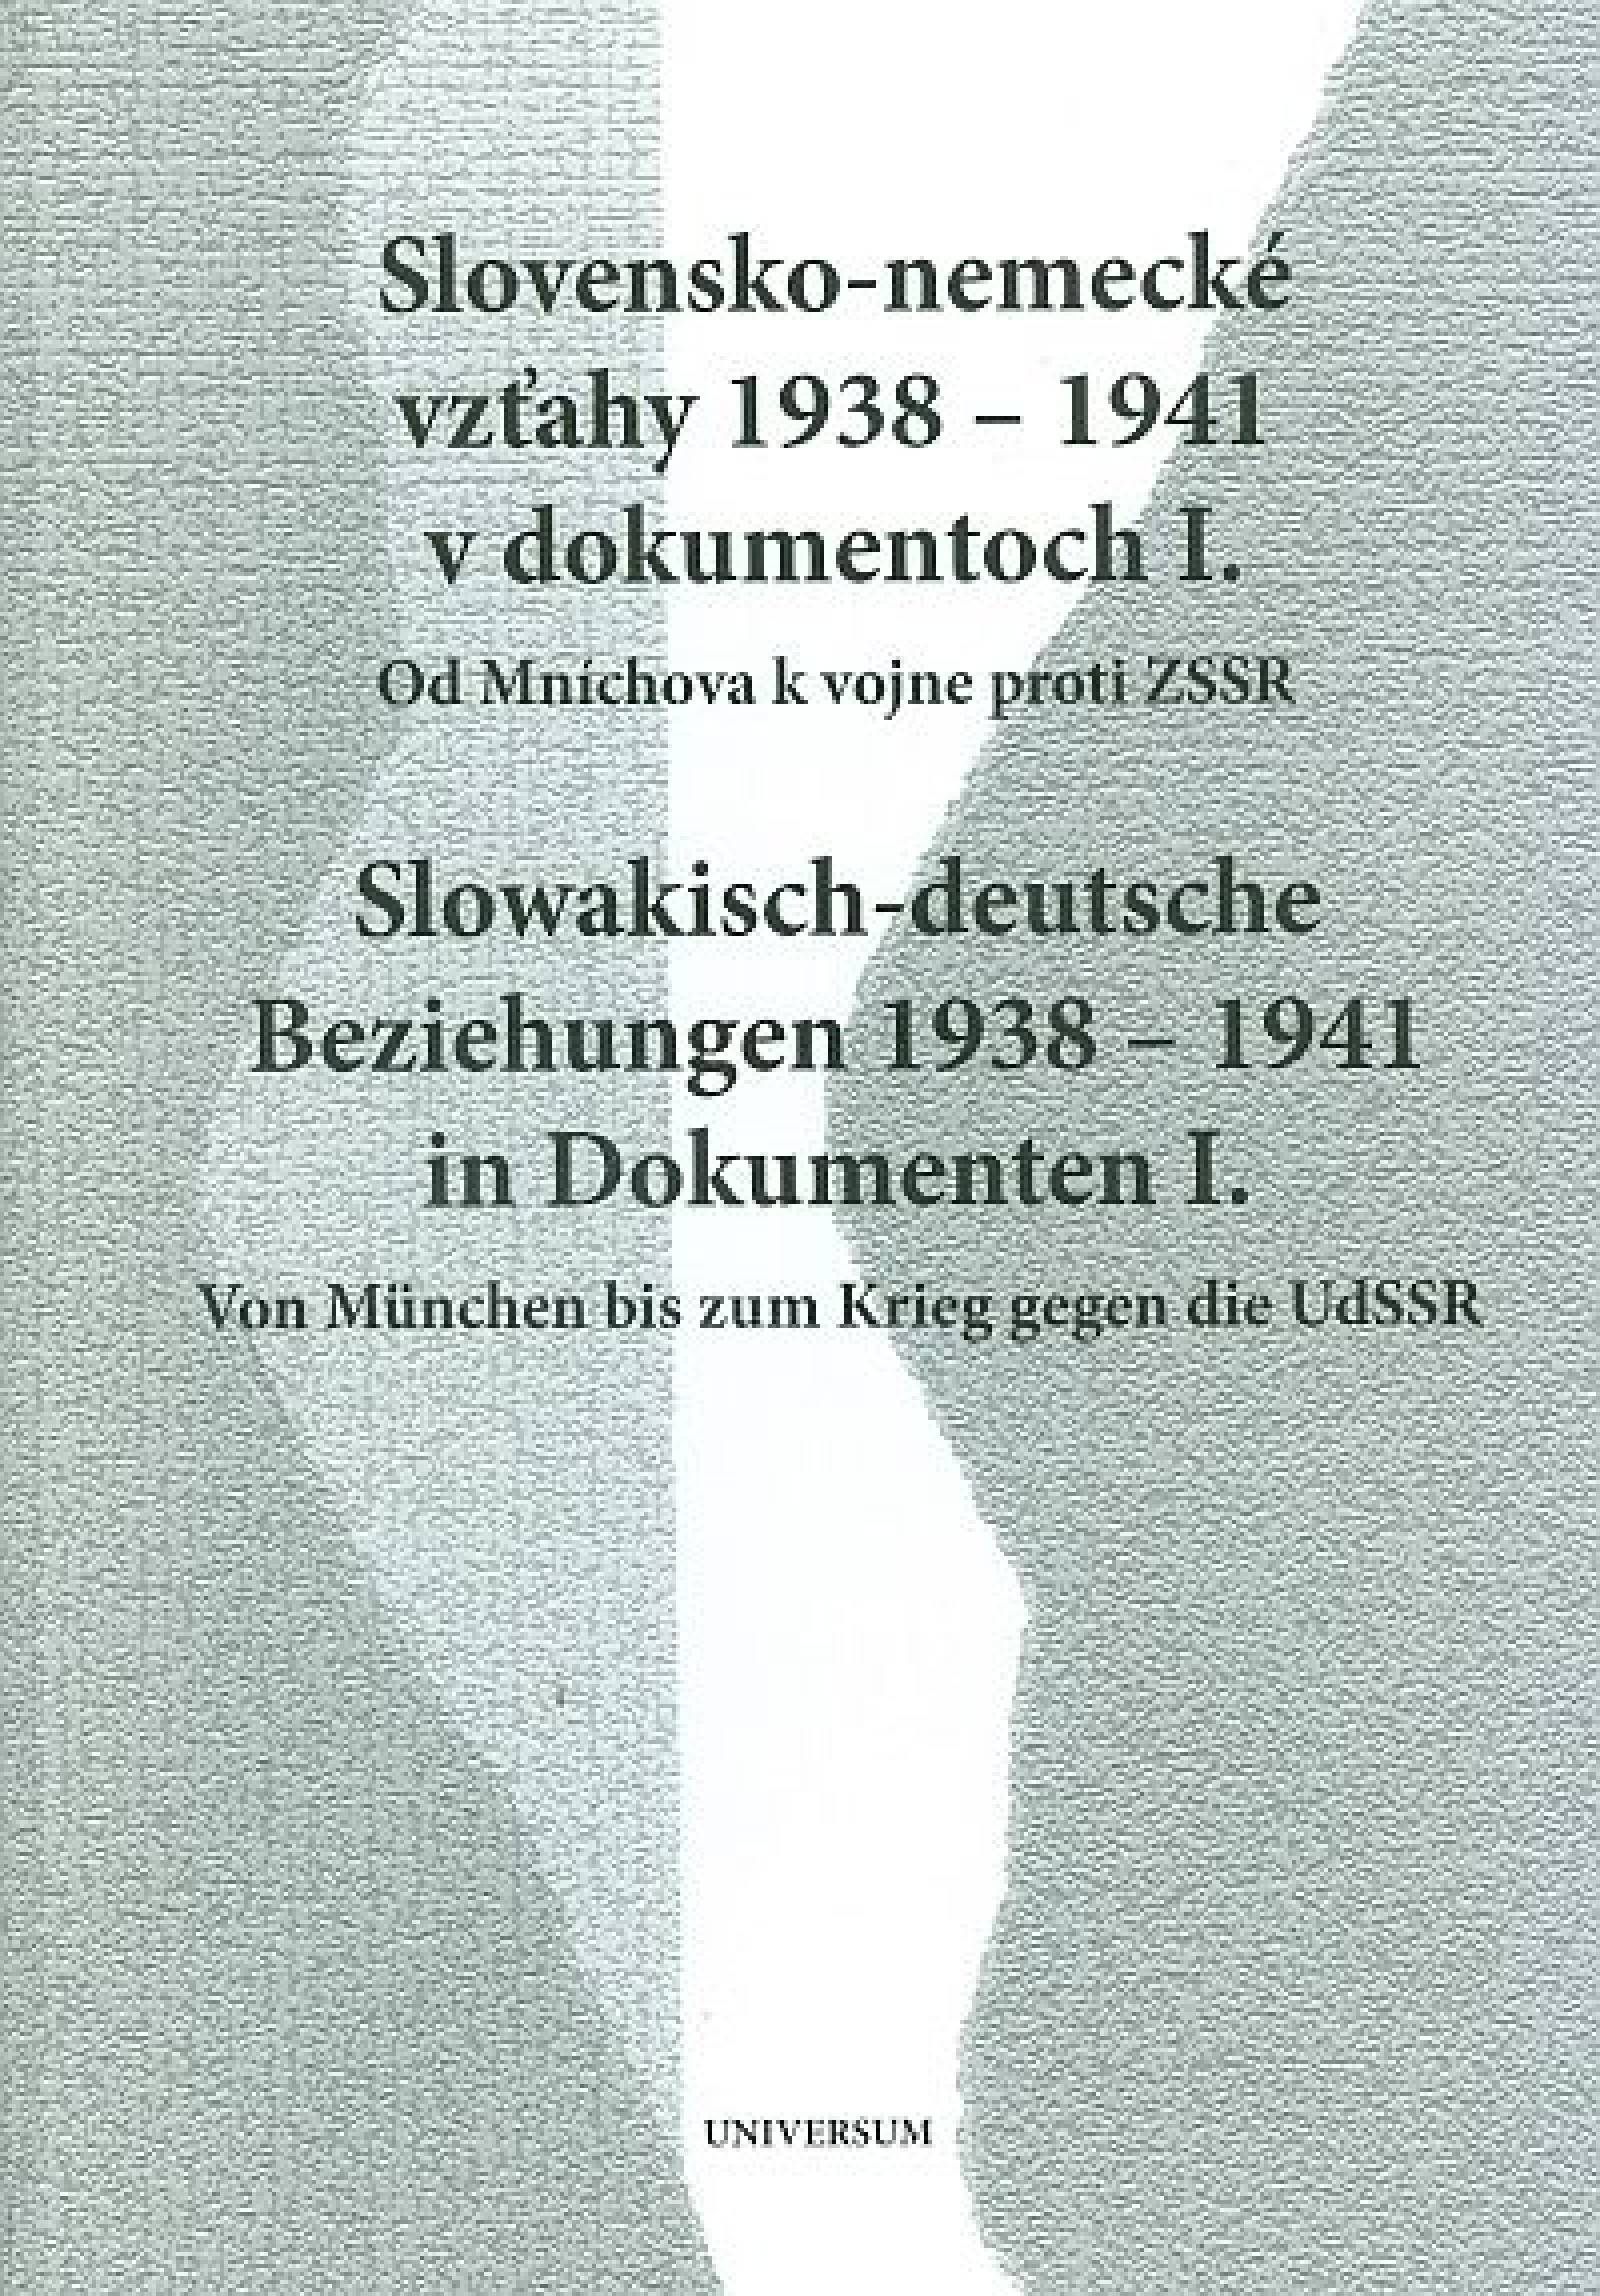 Slovensko-nemecké vzťahy 1938 - 1941 v dokumentoch I (Slowakisch-deutsche Beziehungen 1938-1941 in Dokumenten I.)